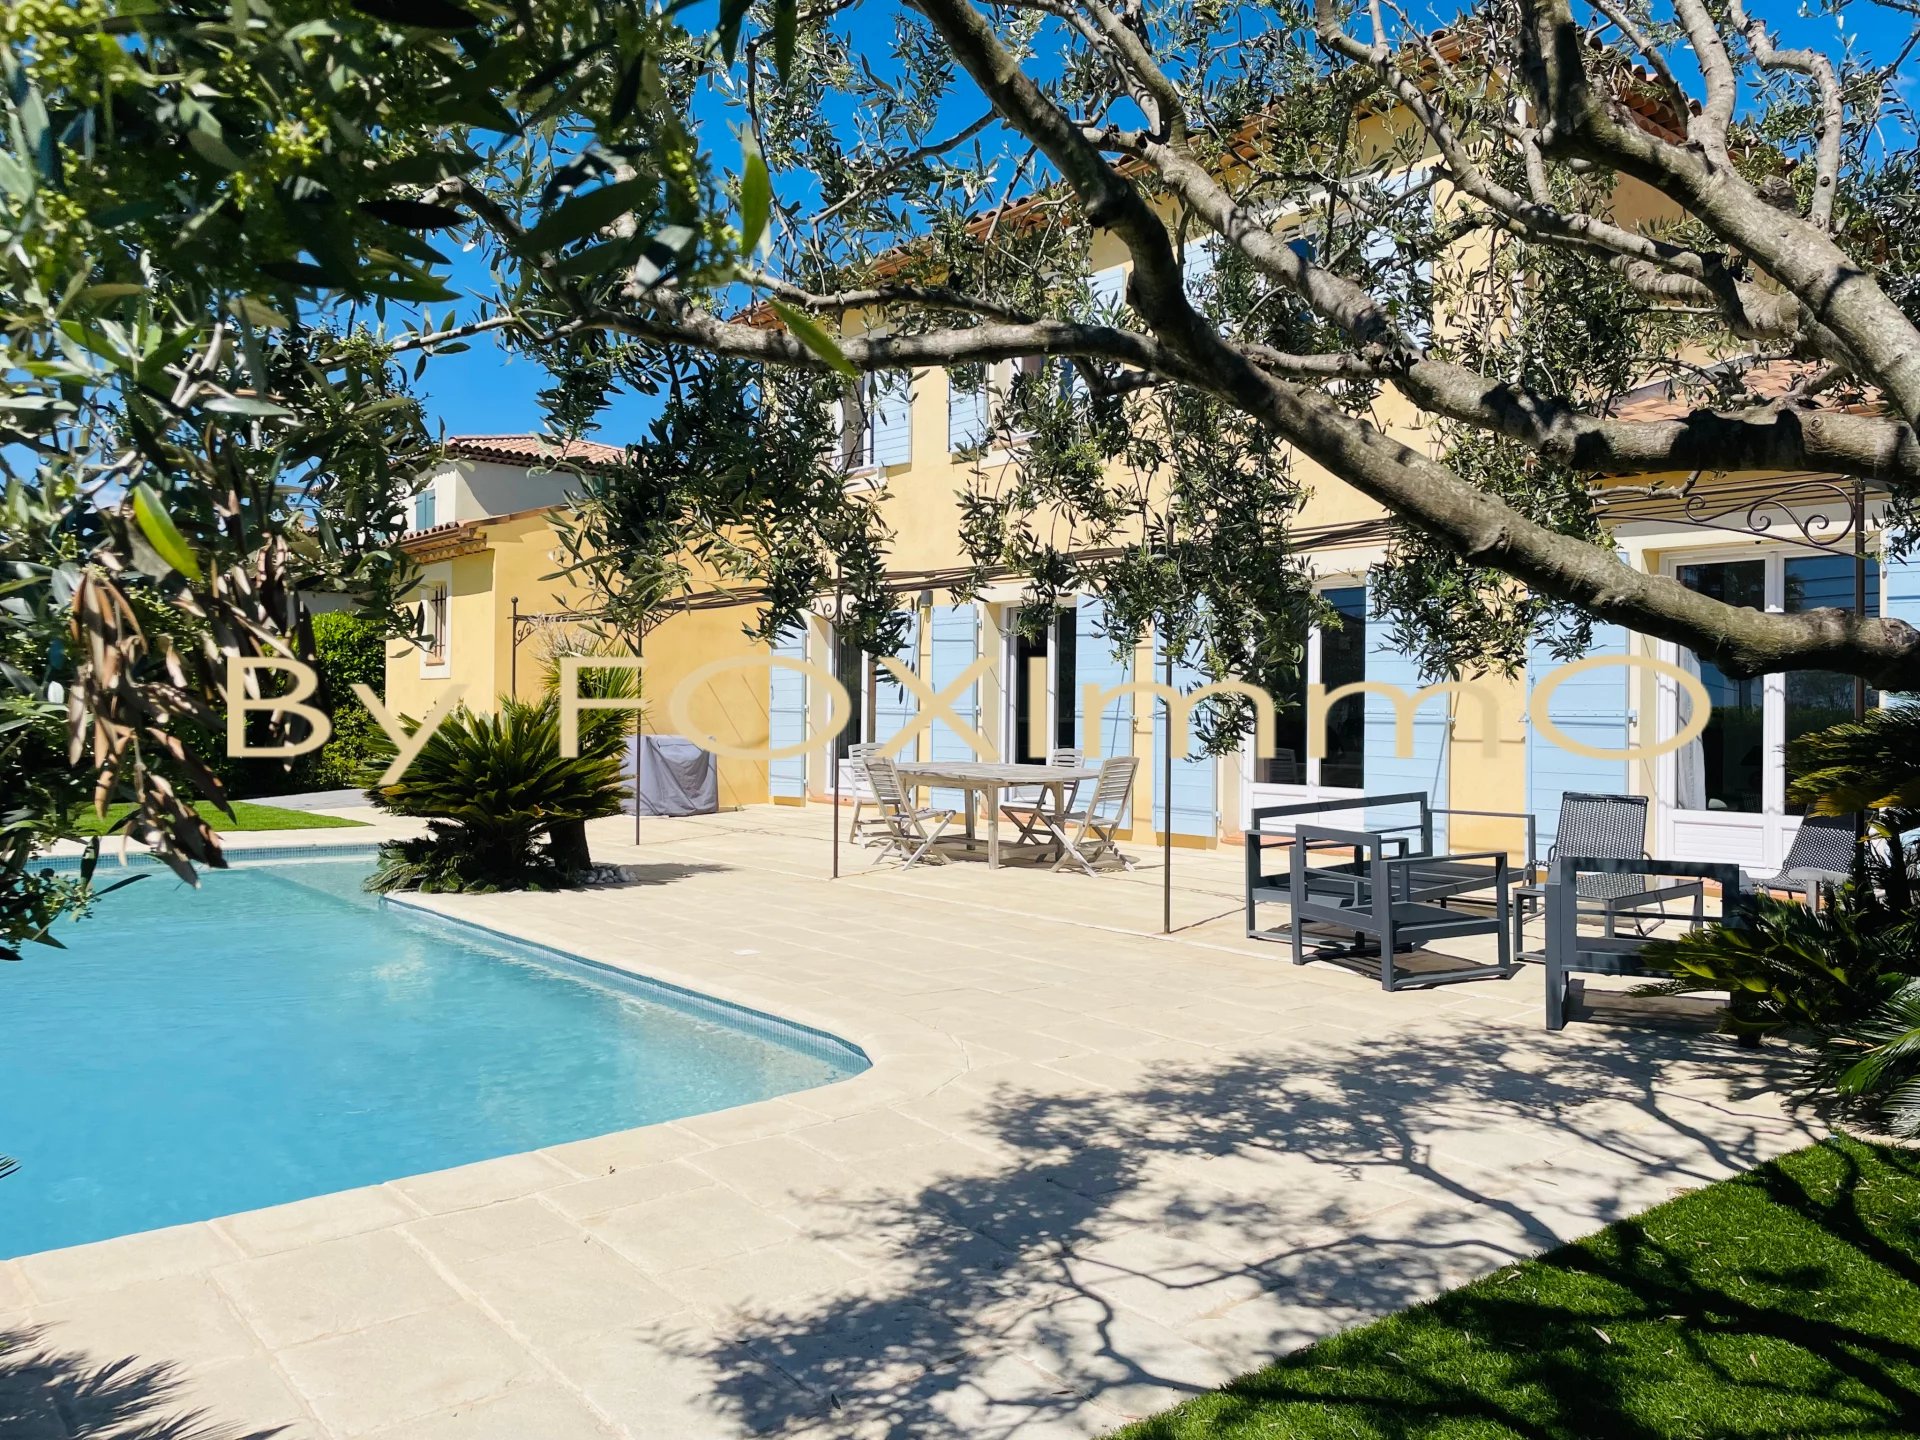 A vendre villa familiale 4 chambres au calme absolu avec piscine